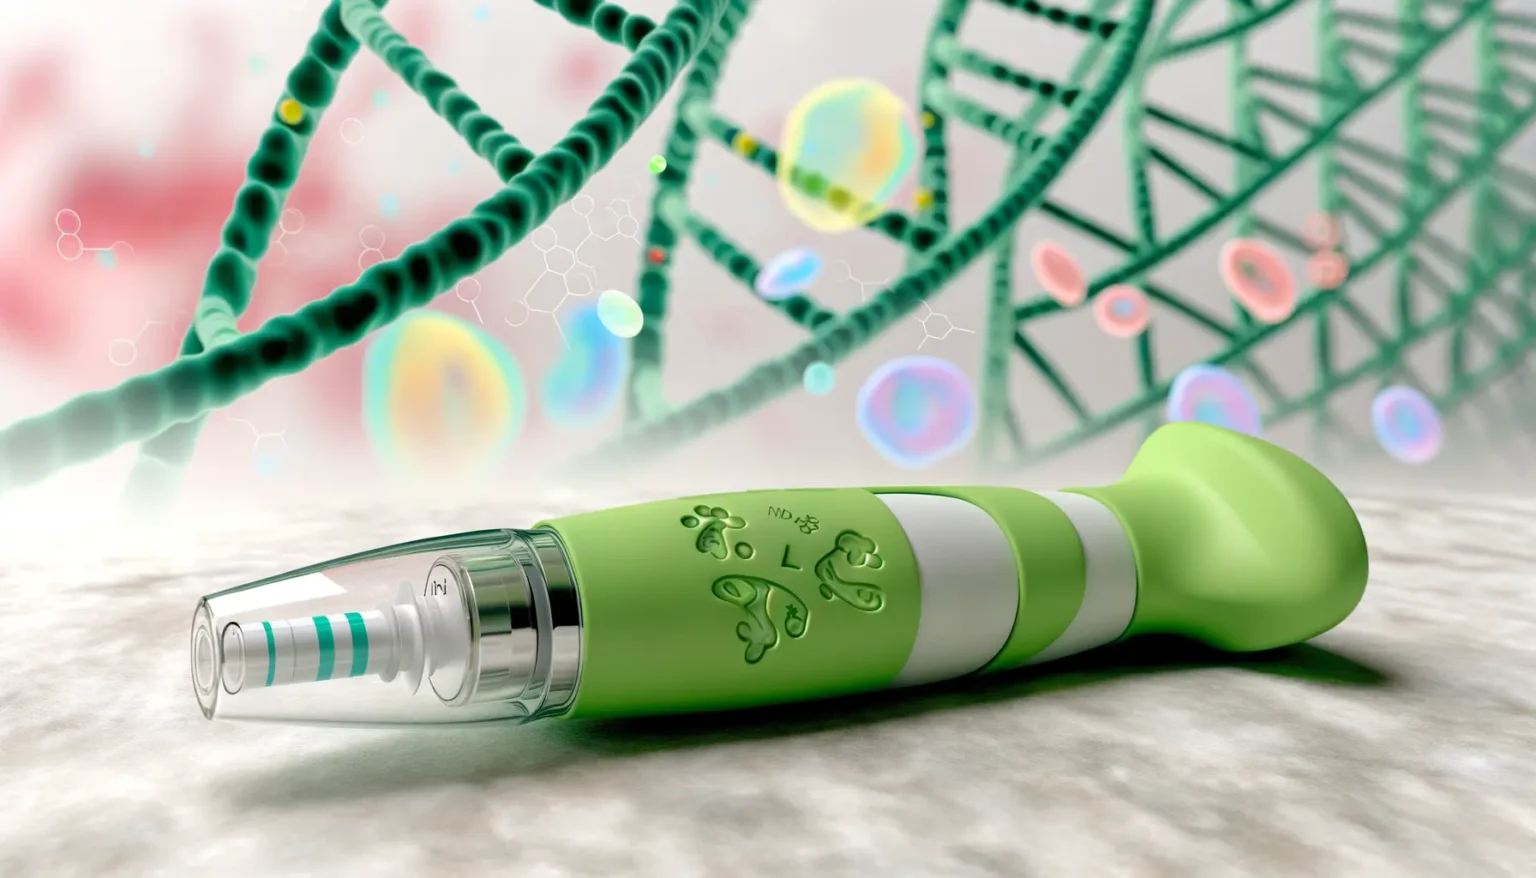 Ein futuristischer medizinischer Injektor mit grüner Farbe liegt im Vordergrund auf einer unscharfen, organisch wirkenden Oberfläche. Im Hintergrund verschwimmen Darstellungen von DNA-Strängen und chemischen Strukturen mit Bokeh-Effekten.